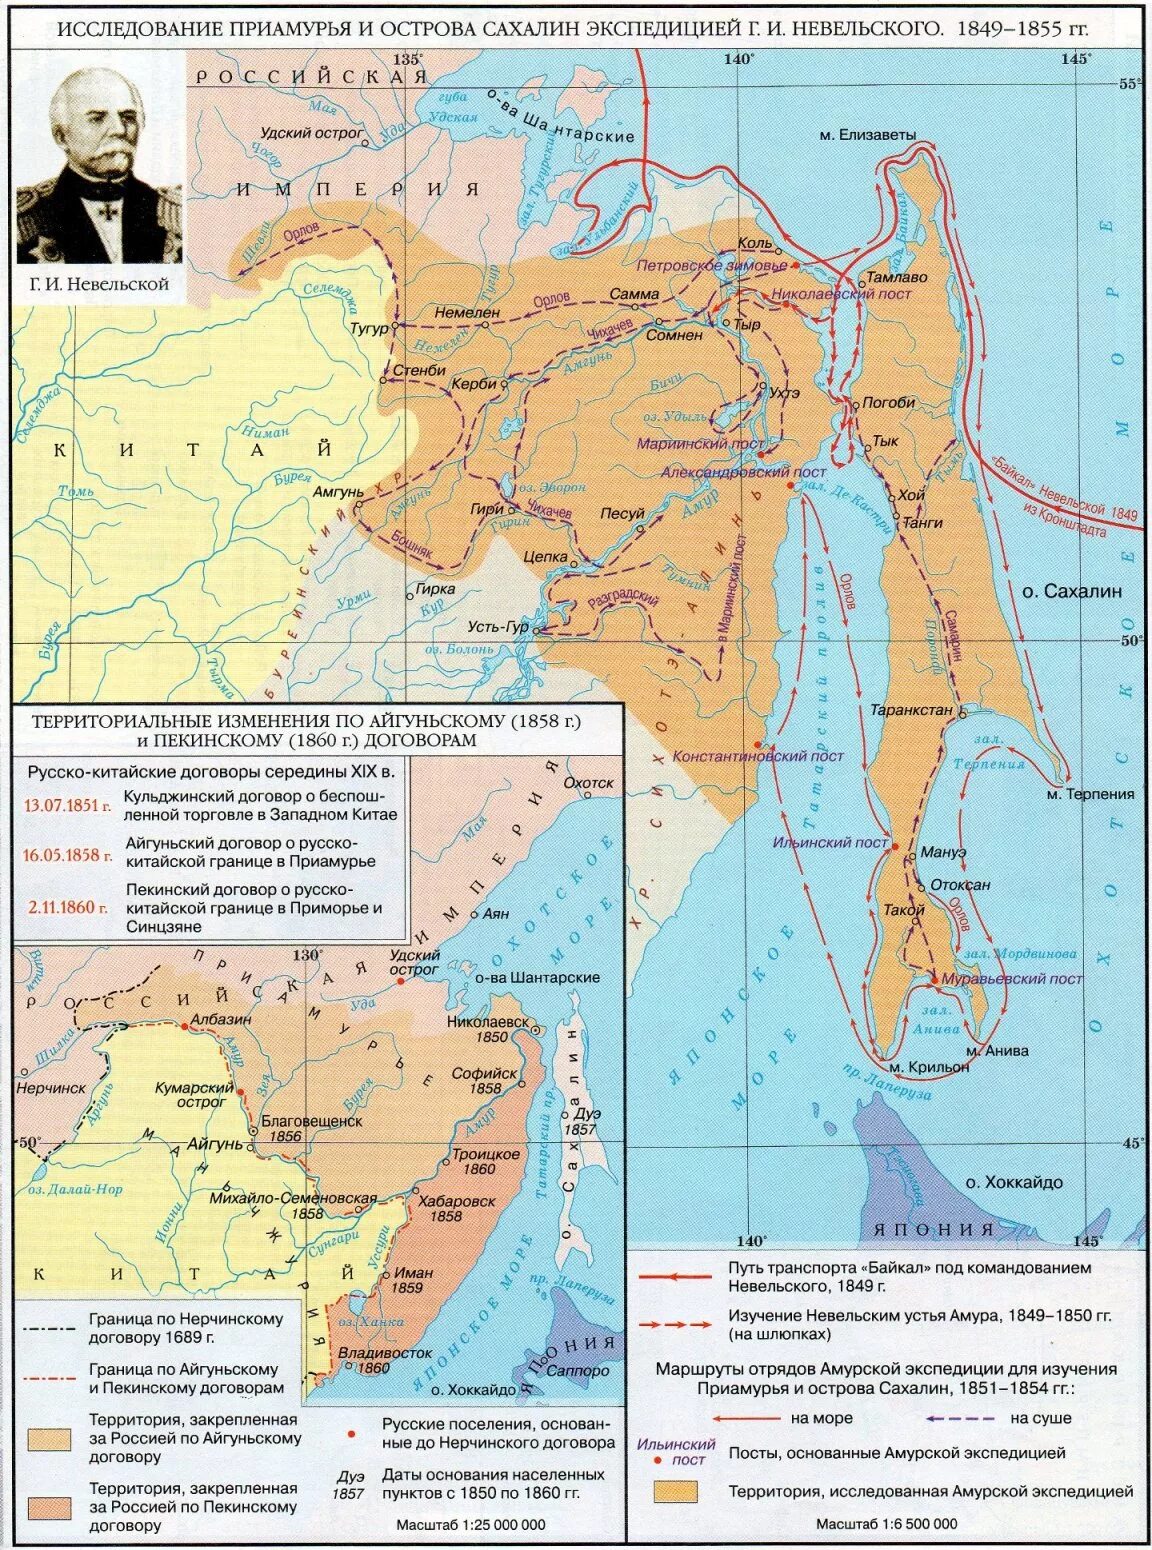 Дальний Восток 19 век карта. Дальний Восток в 19 веке карта. Дальний Восток карта история 19 век. Невельской на Дальнем востоке карта.